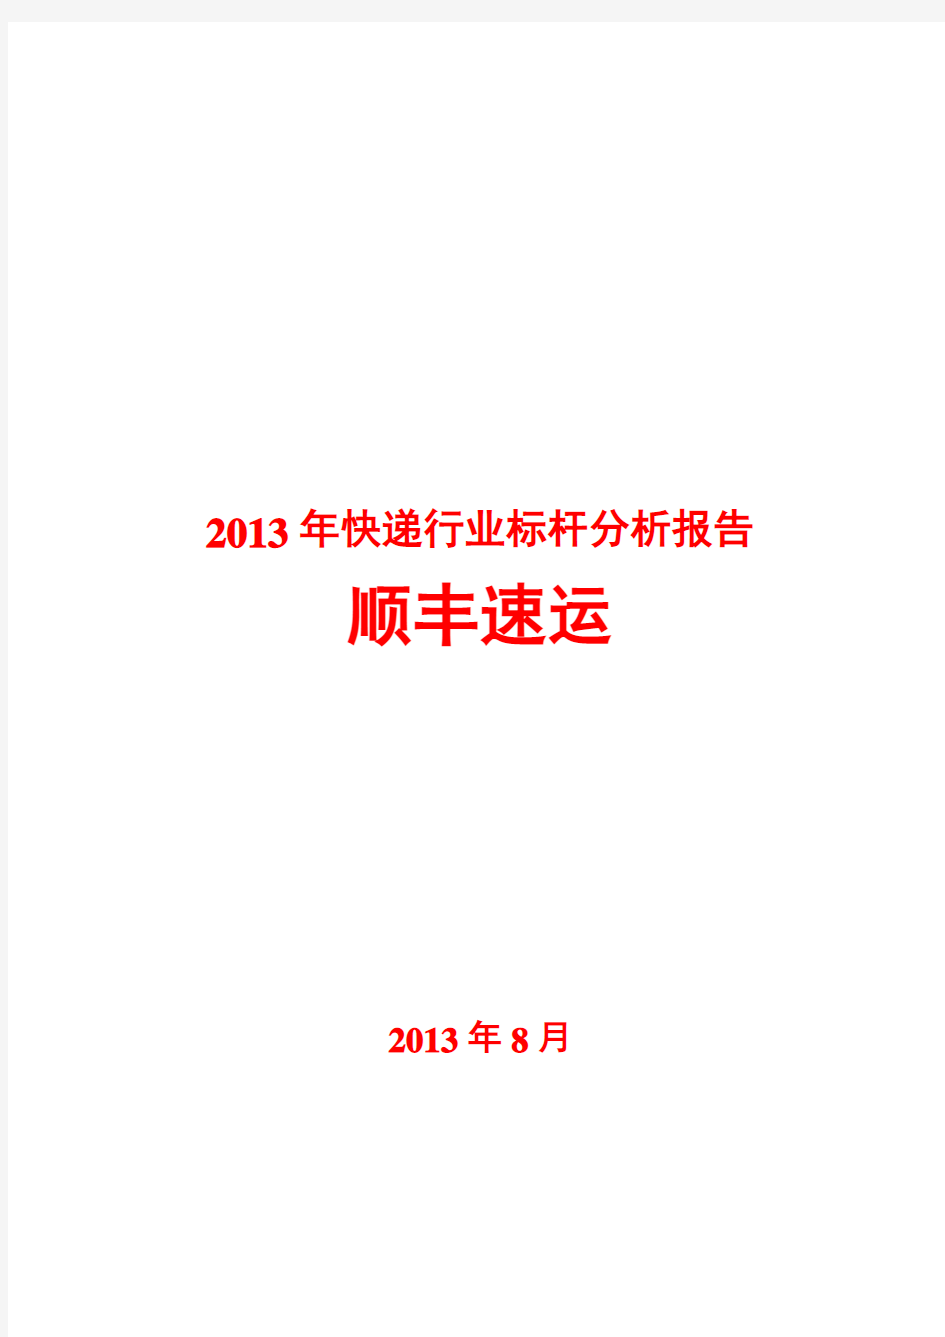 2013年快递行业标杆分析报告